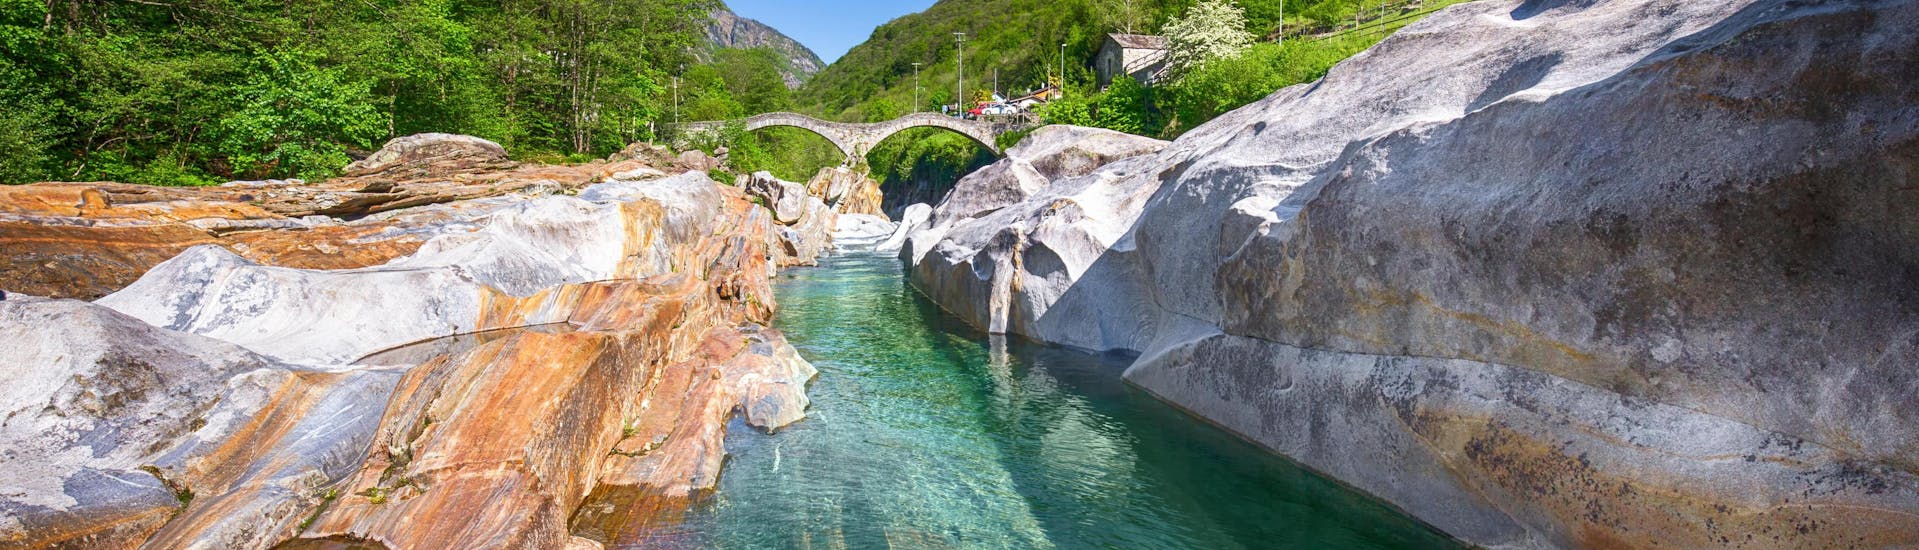 Ein Bild eines kristallklaren Bachs, der durch das Verzascatal, einem beliebten Ziel zum Canyoning im Tessin, fließt.